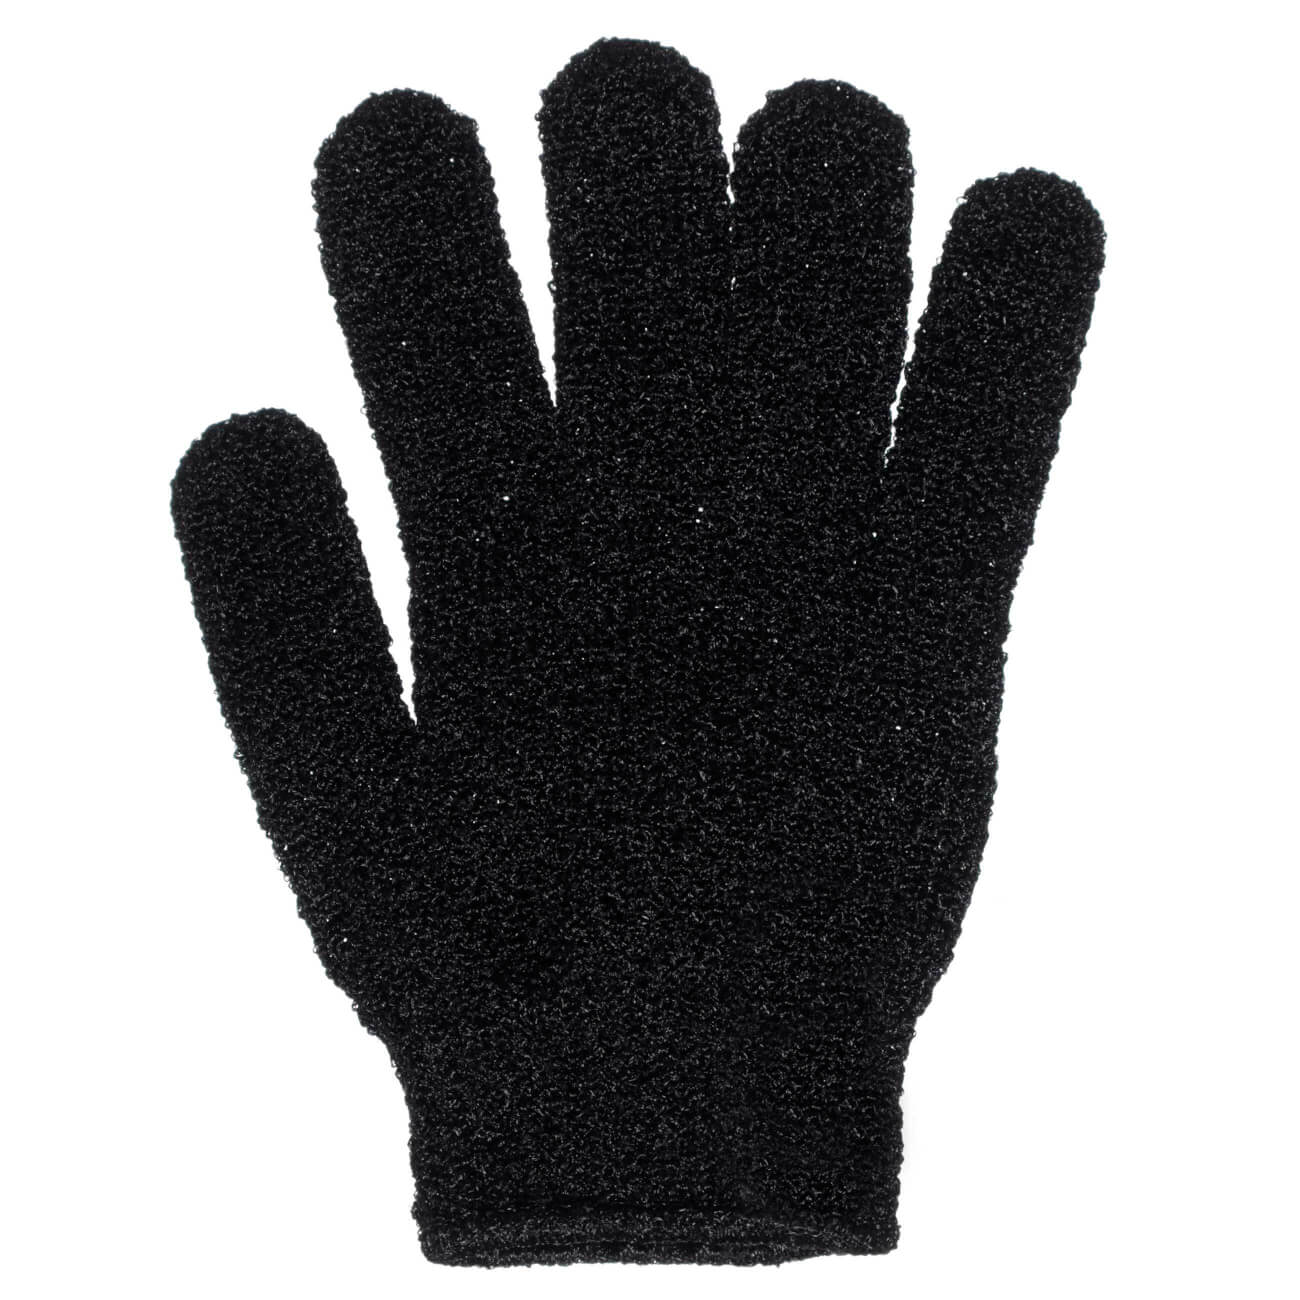 Перчатка для мытья тела, 20 см, 2 шт, отшелушивающая, нейлон, черная, Glamor шумовка нейлон навеска черная daniks солид ja20200420 2